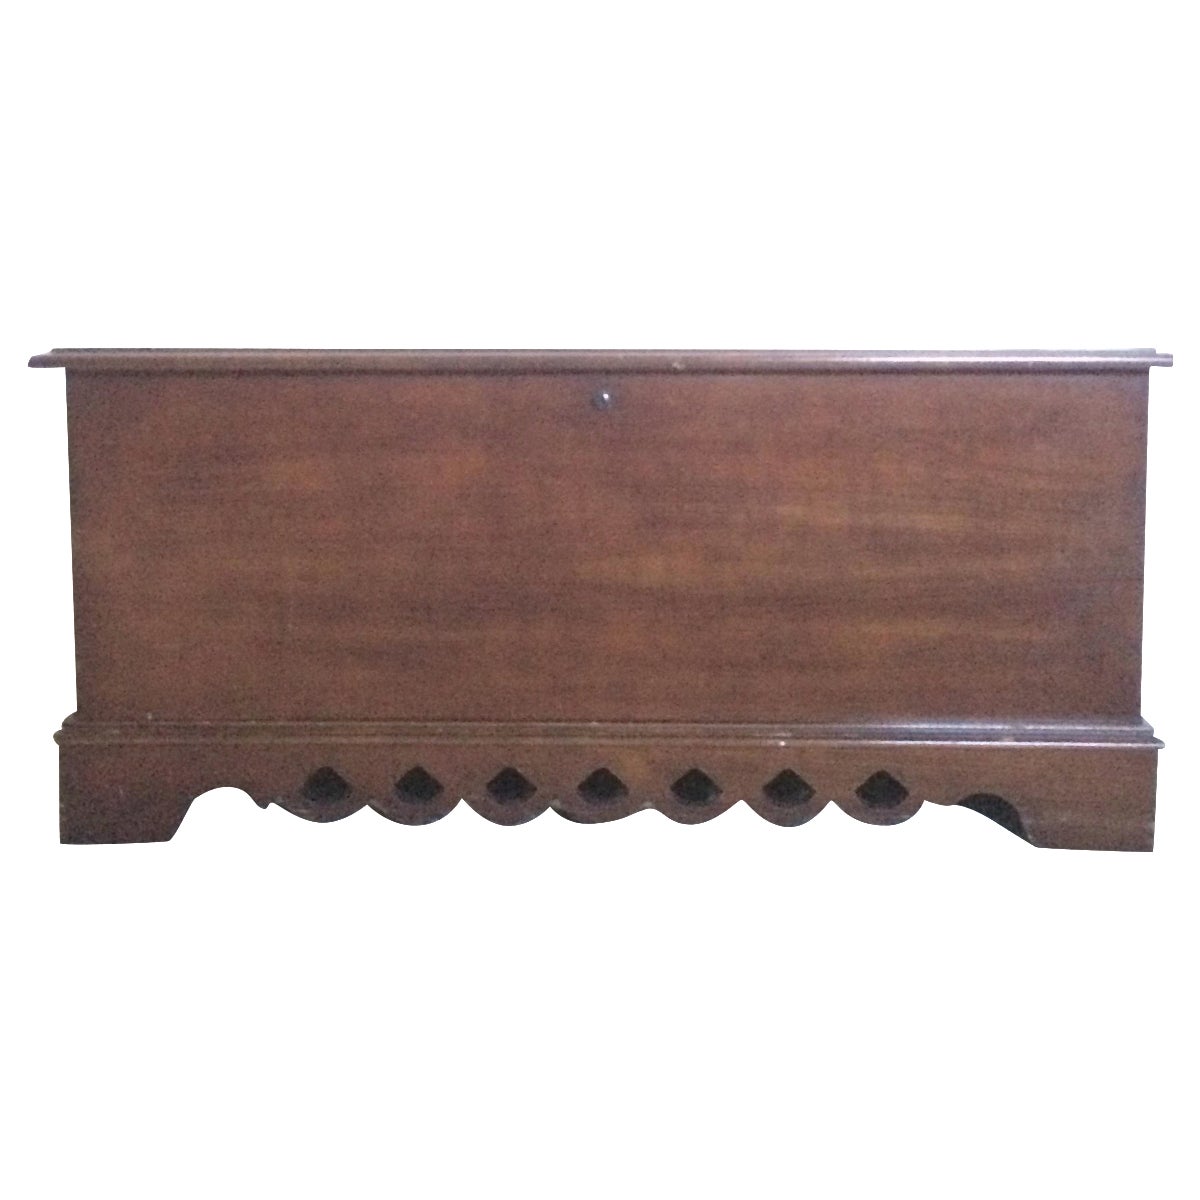 wooden-cedar-chest-by-lane-furniture-5718.jpg